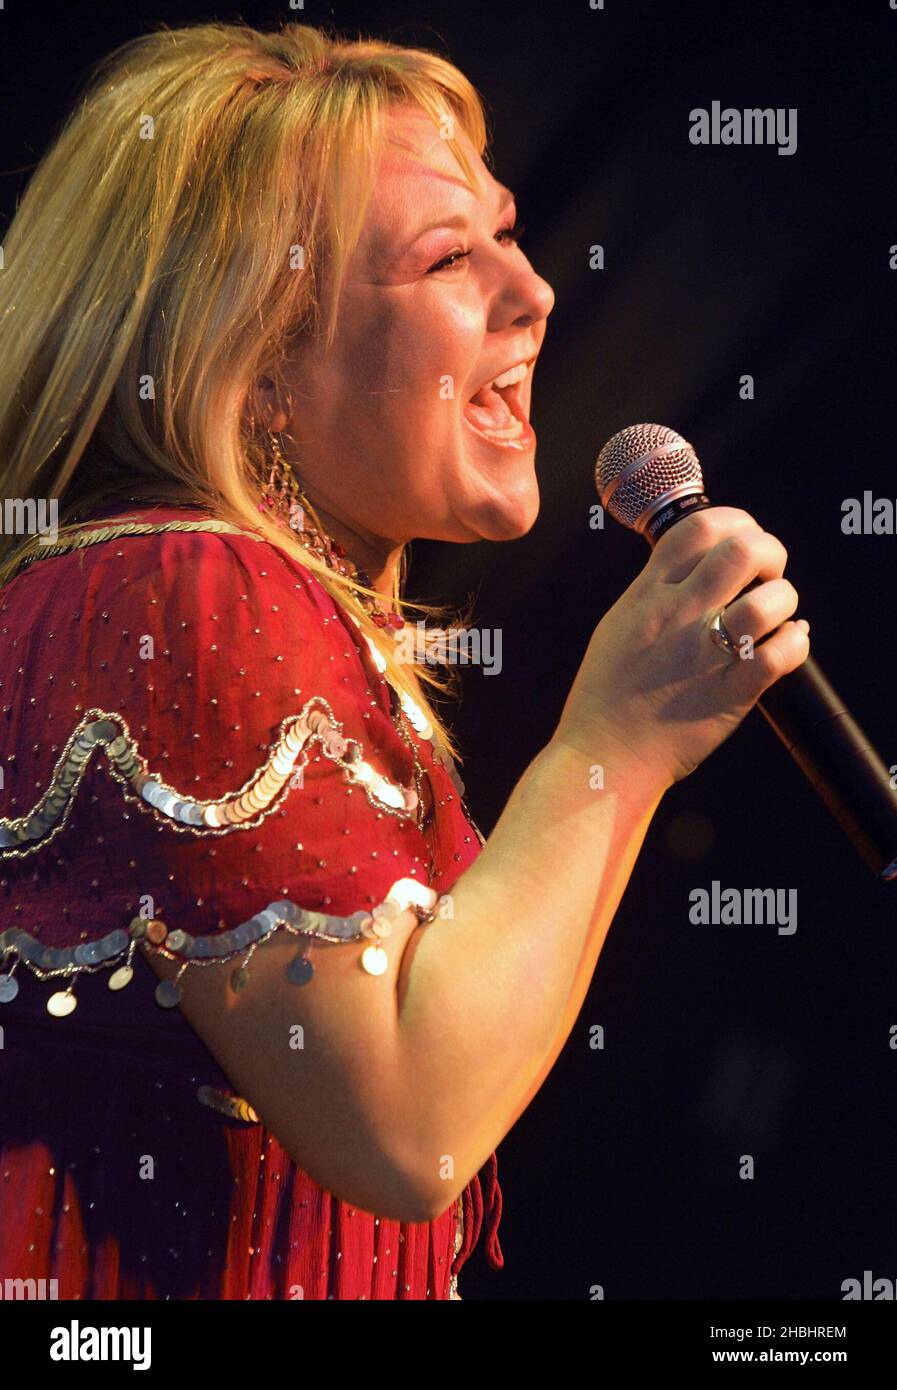 Soapstar Wendi Peters, de Coronation Street, candidat à la sortie du spectacle de célébrités d'ITV Soapstar Superstar se produit en direct sur scène au GAY Astoria de Londres le 21,2006 janvier. Banque D'Images